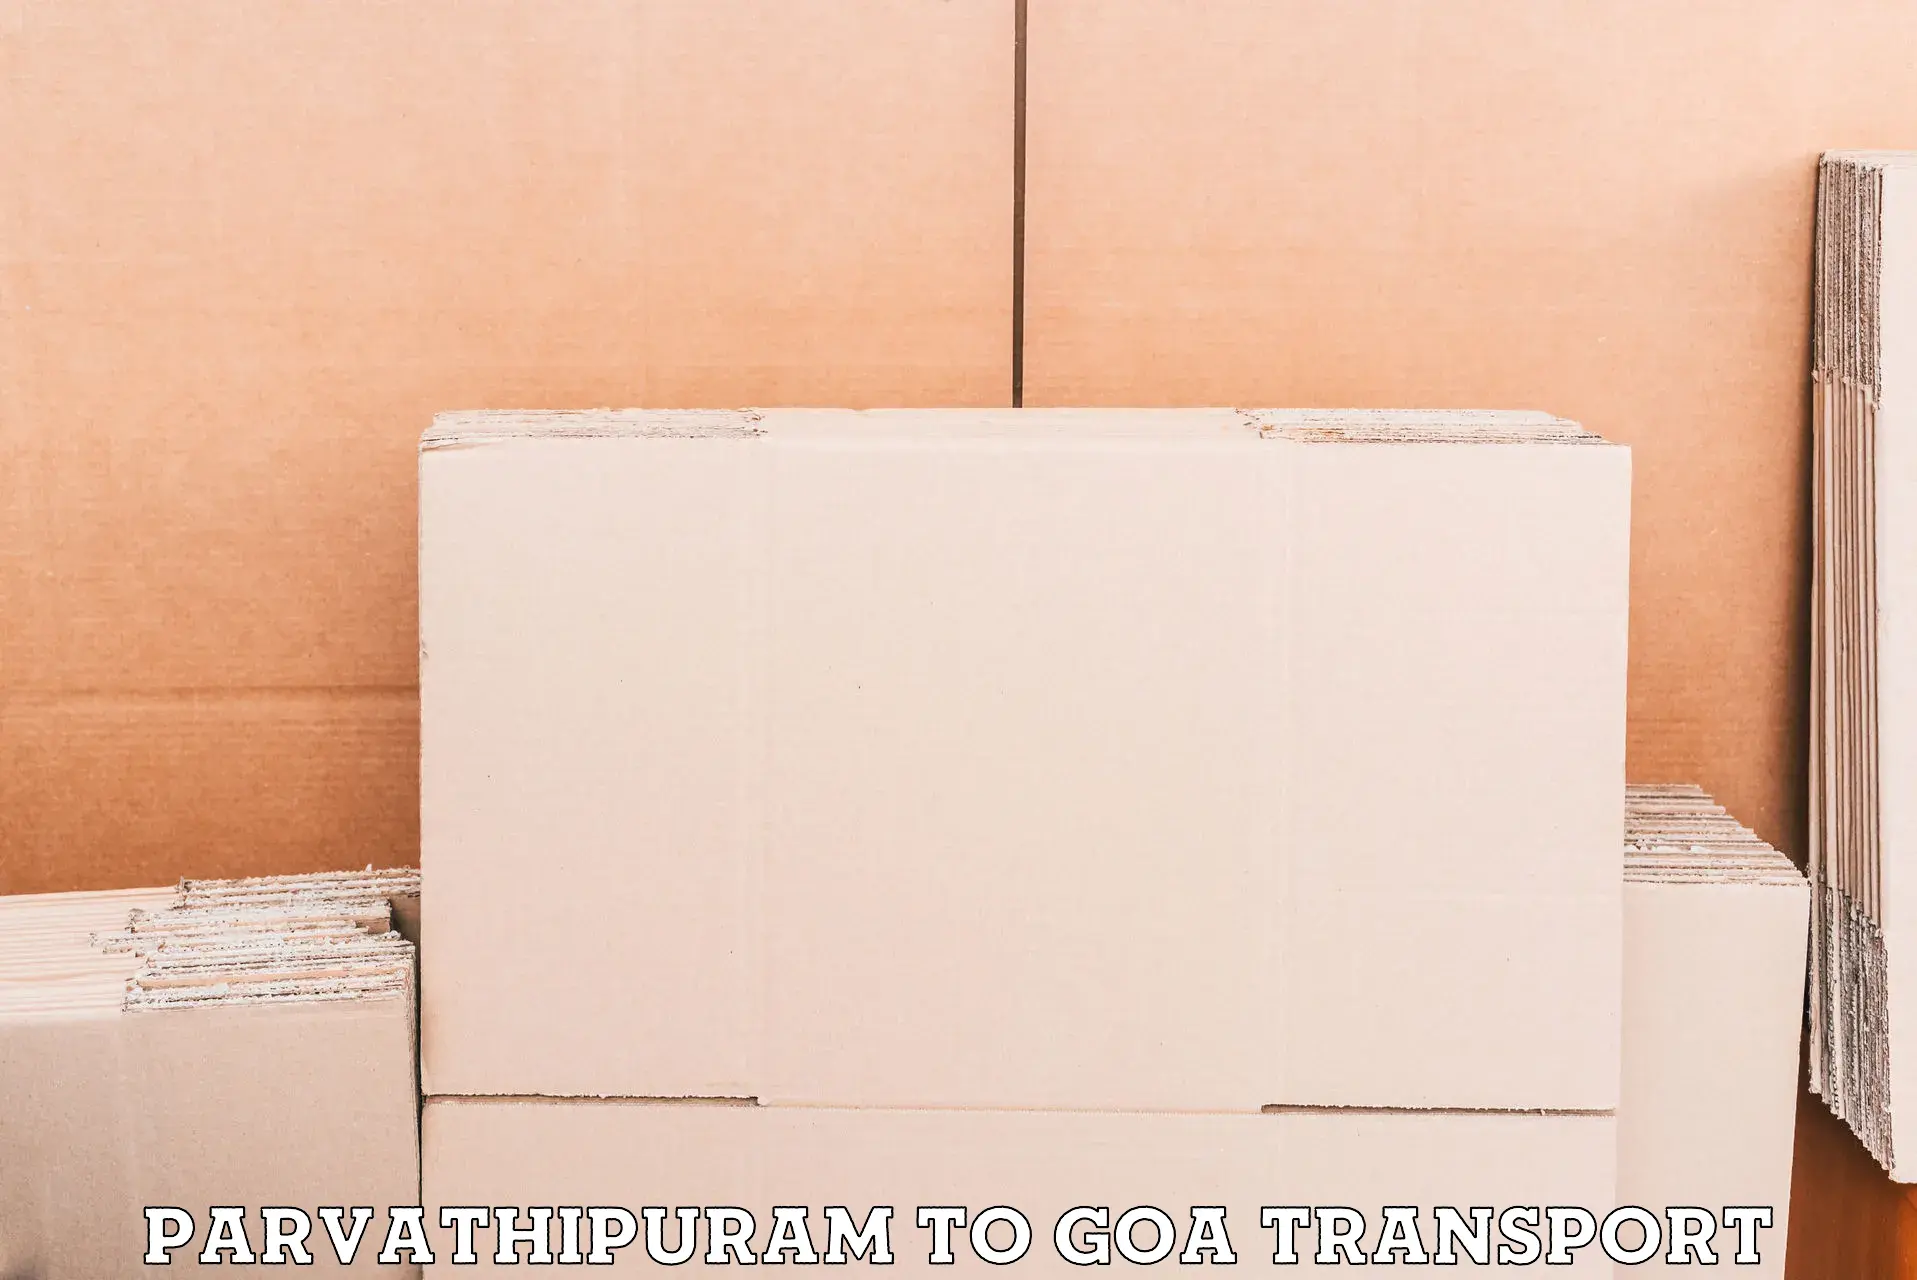 Transport shared services Parvathipuram to Vasco da Gama